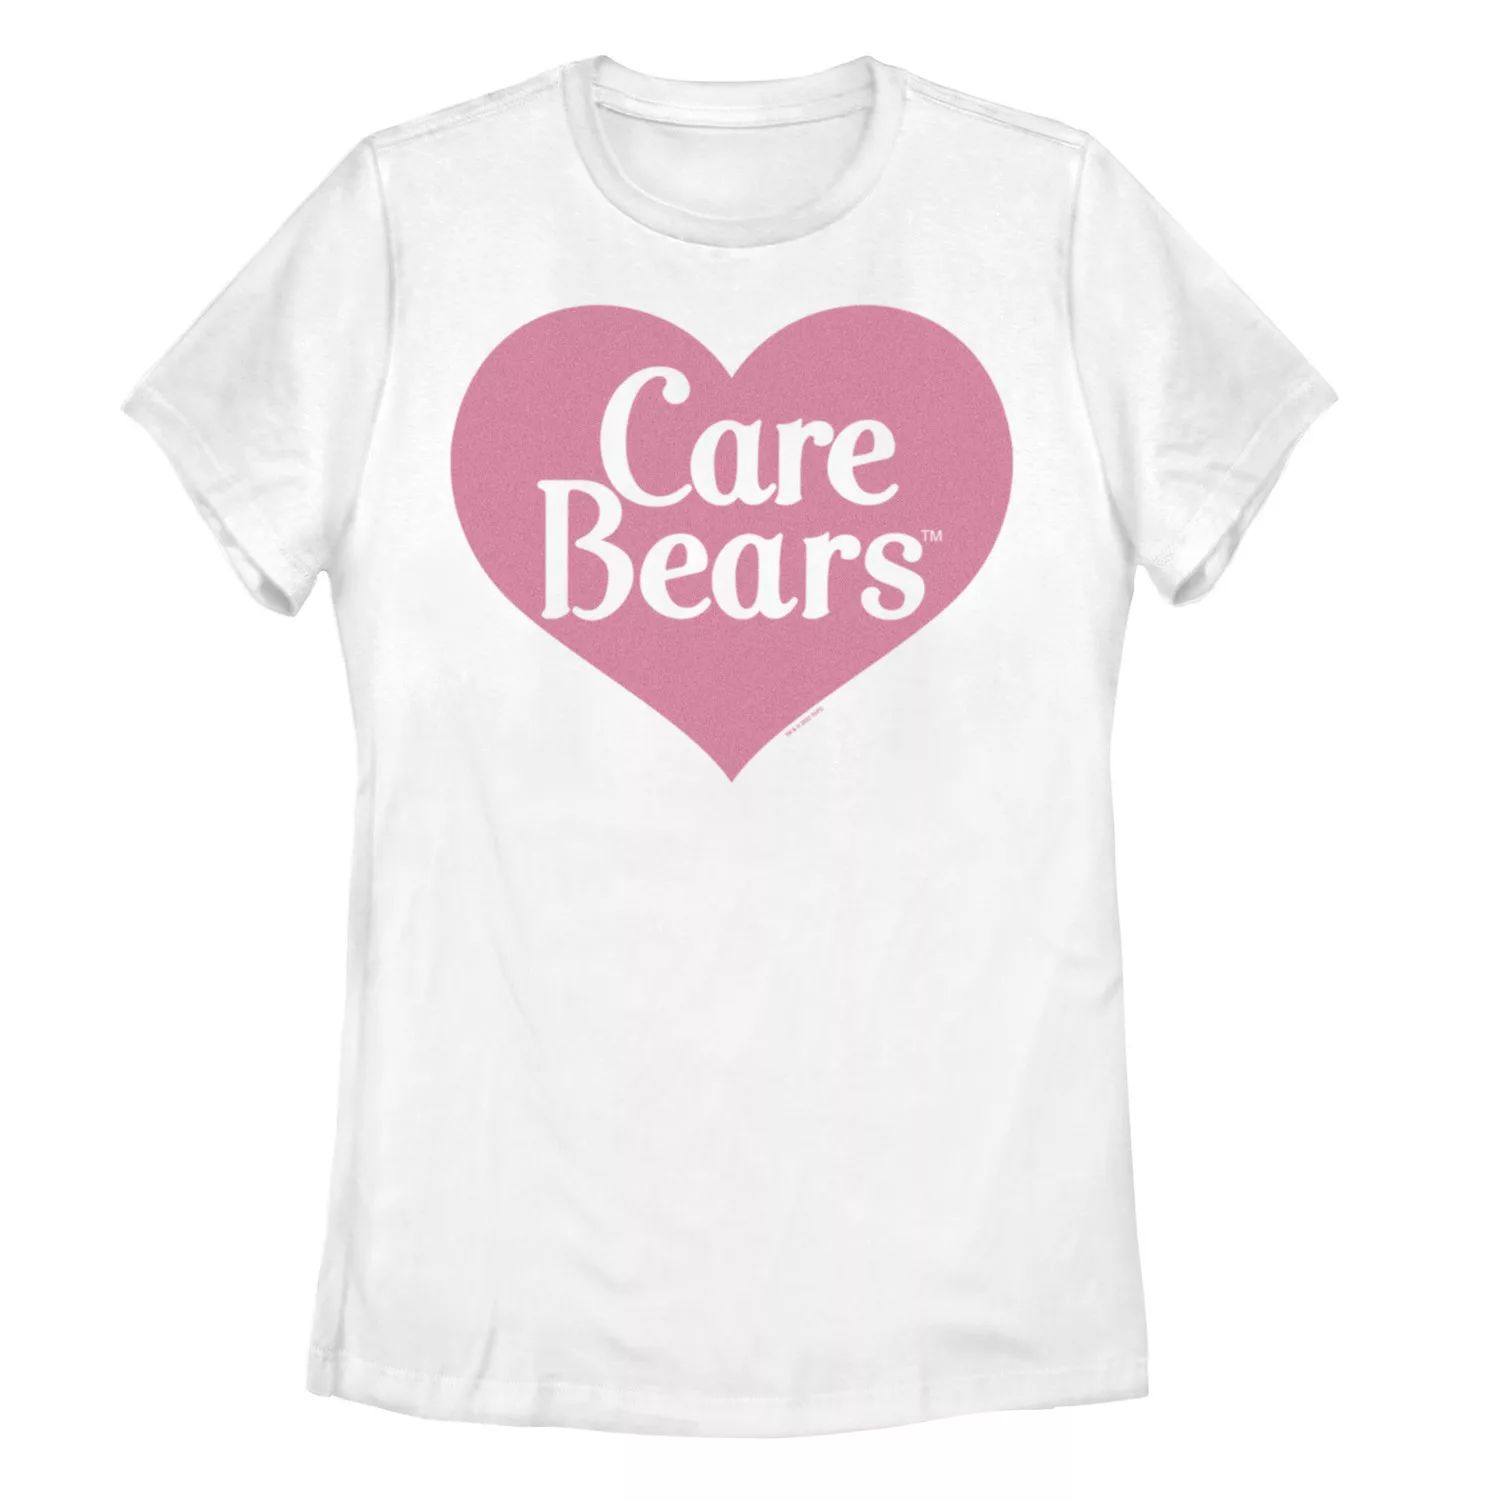 Классическая футболка с логотипом Care Bears для юниоров и графическим рисунком Care Bears Licensed Character